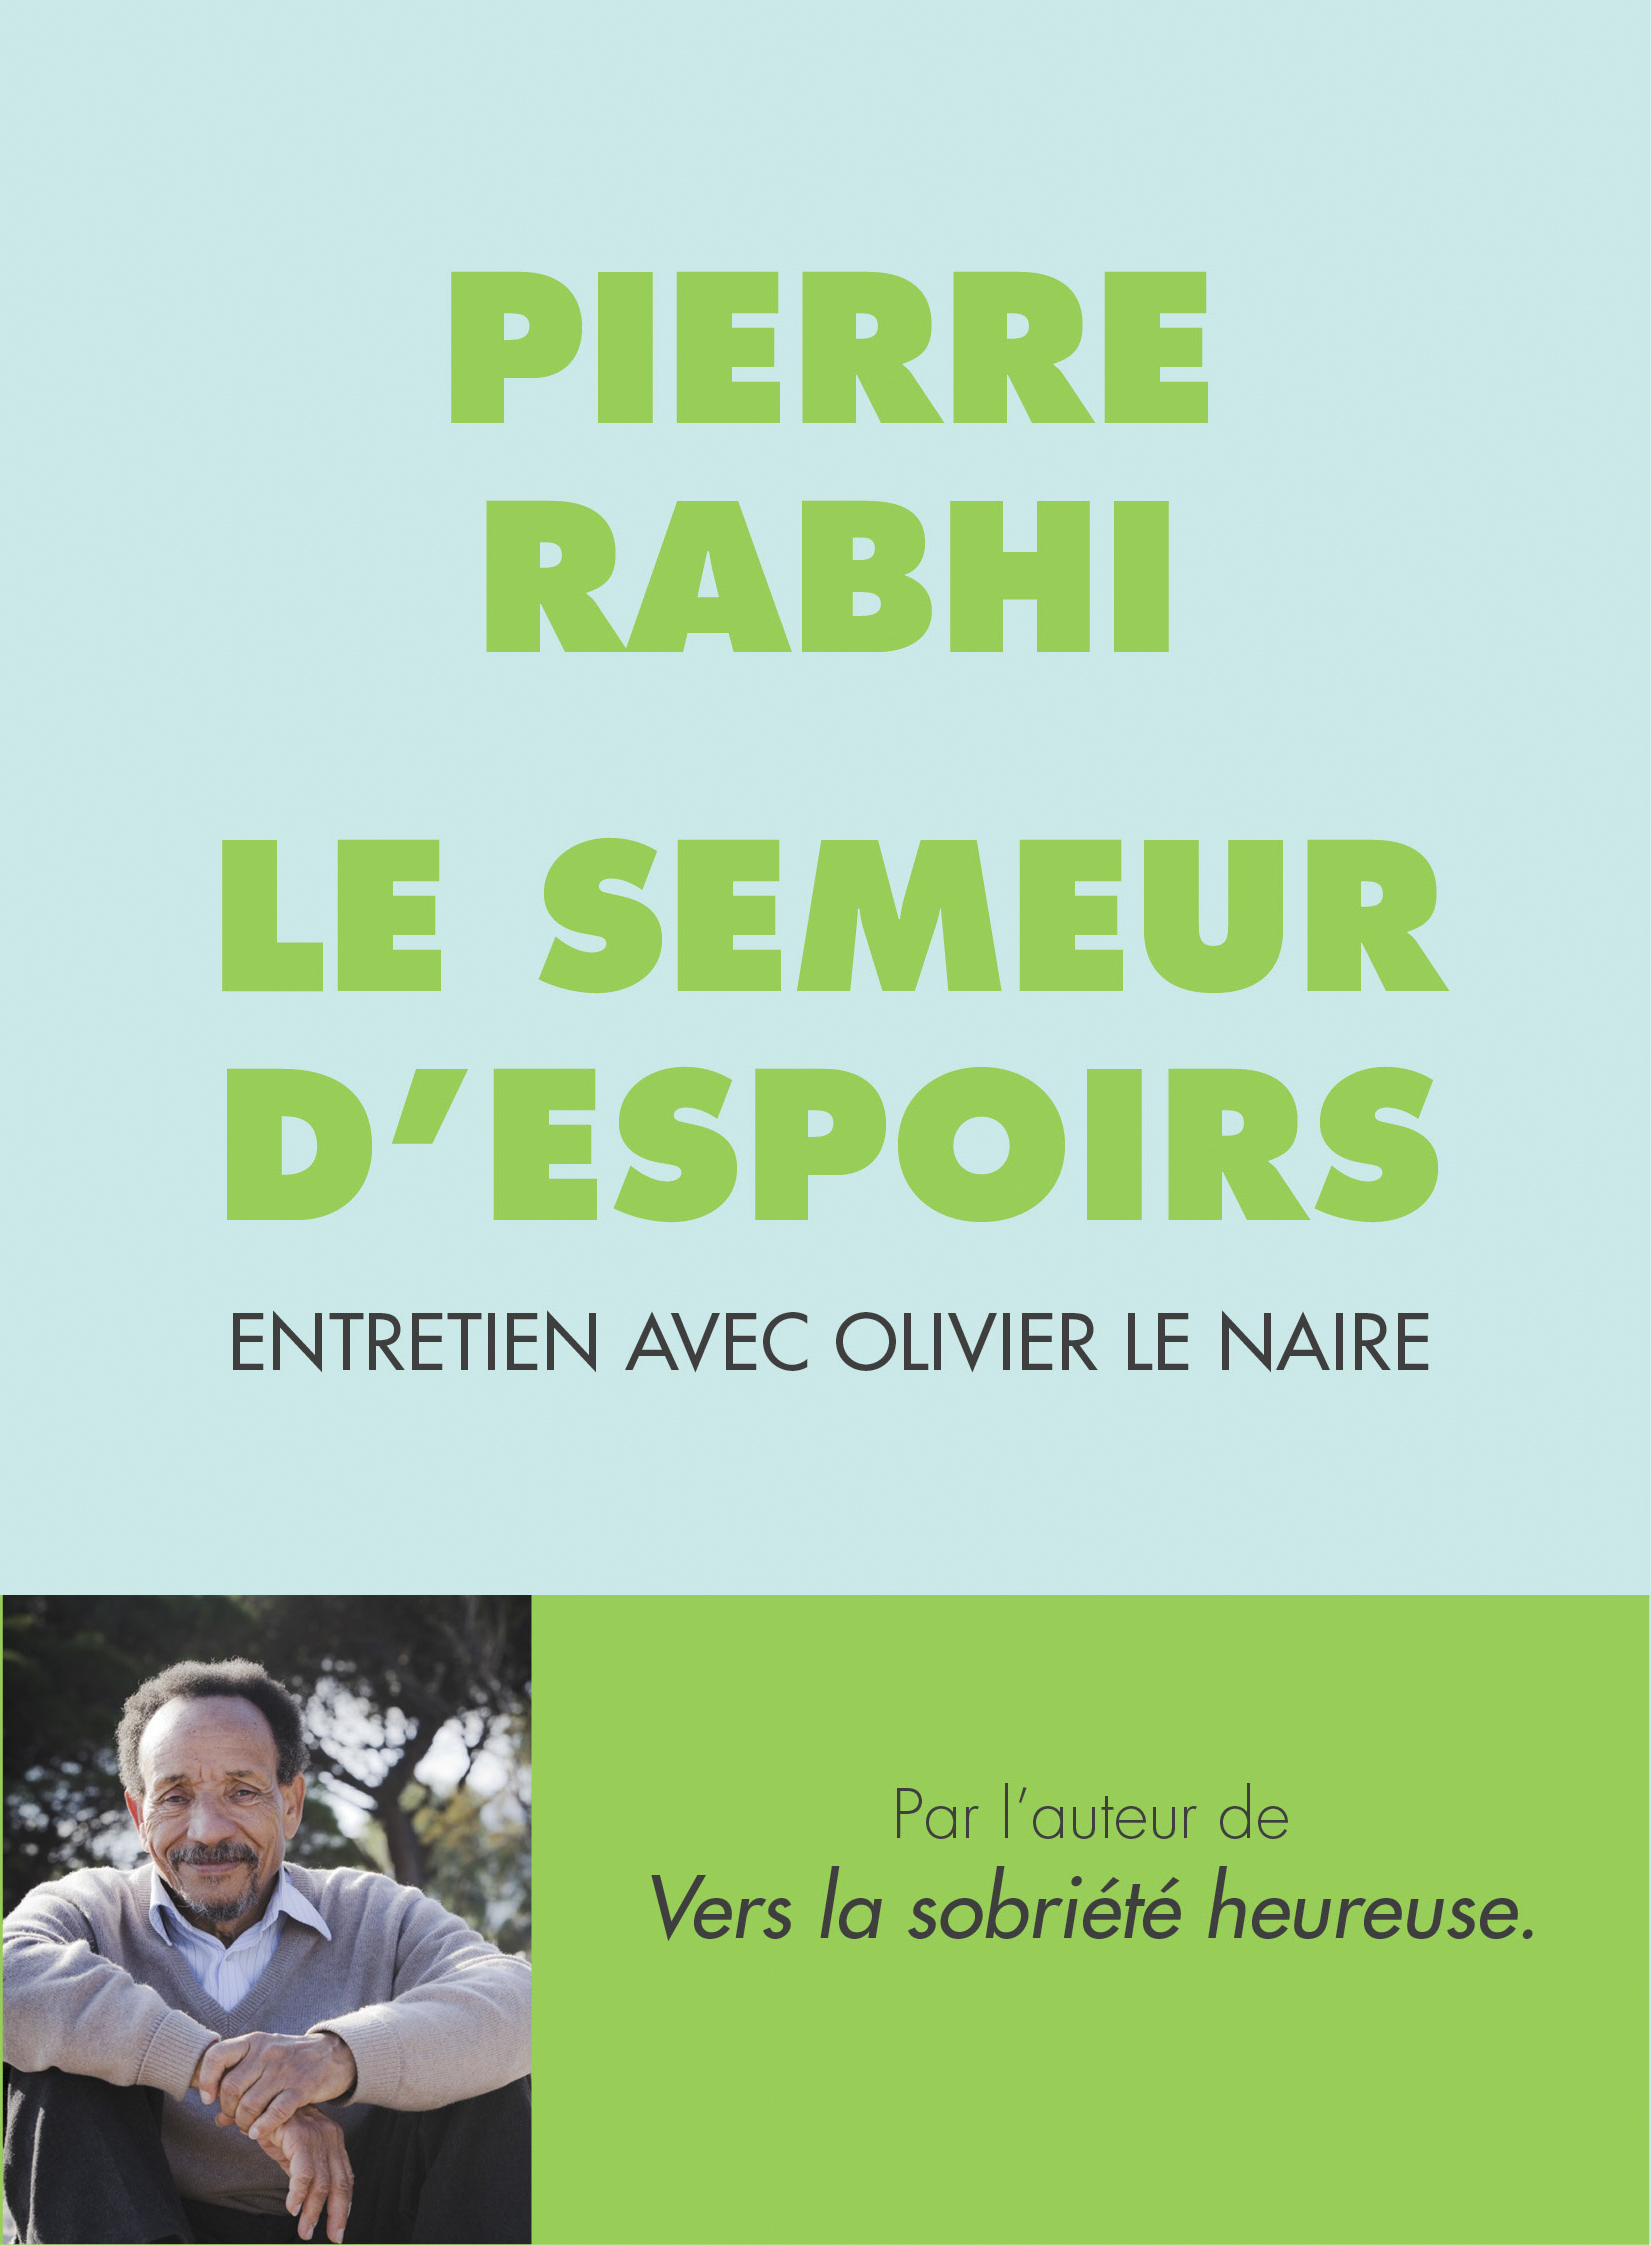 Pierre Rabhi, le semeur d’espoirs